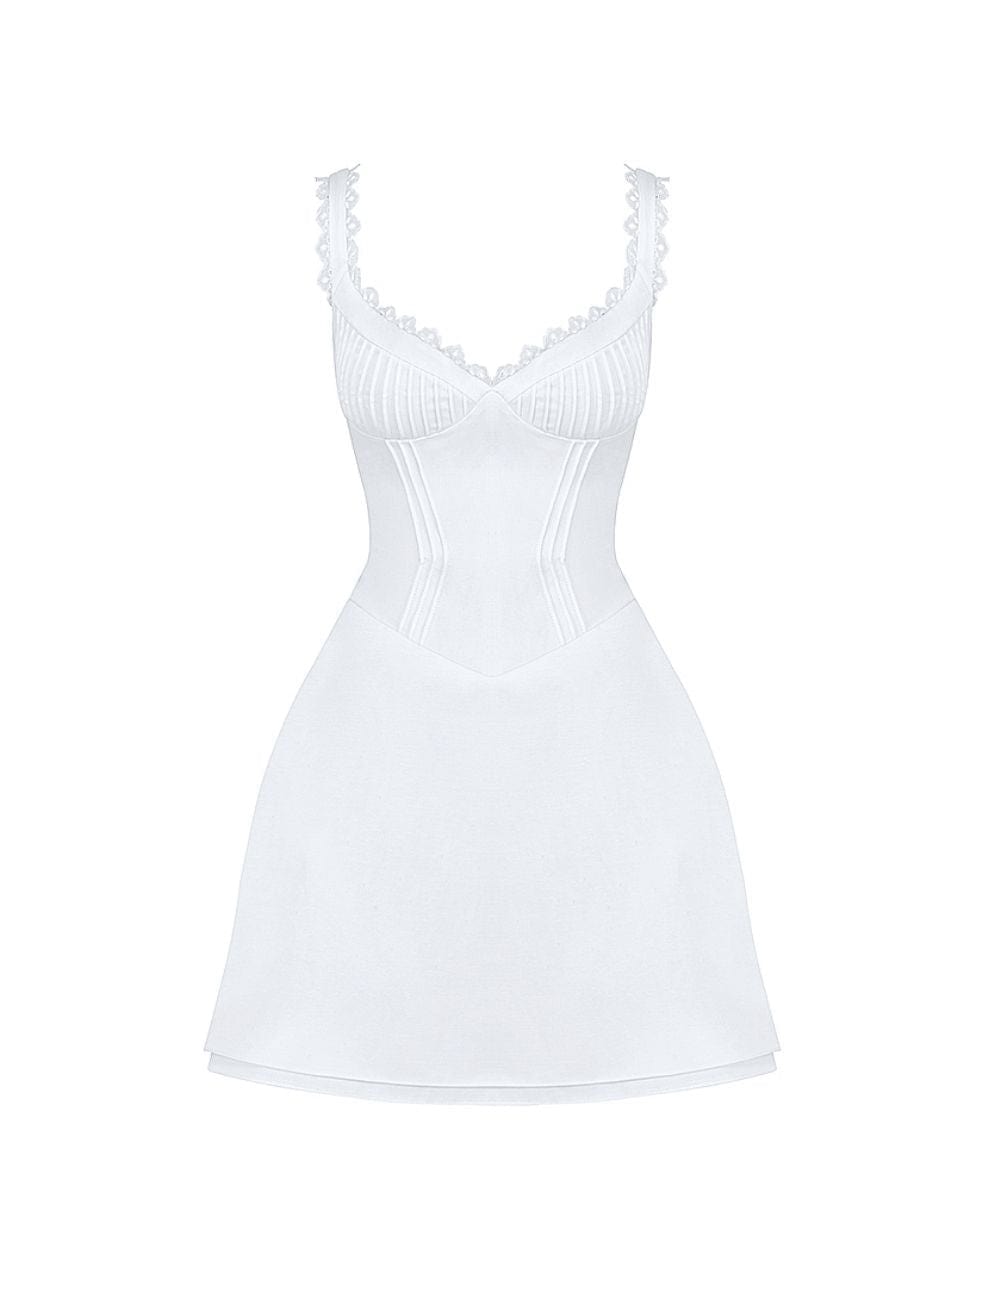 Tilly Dress in White